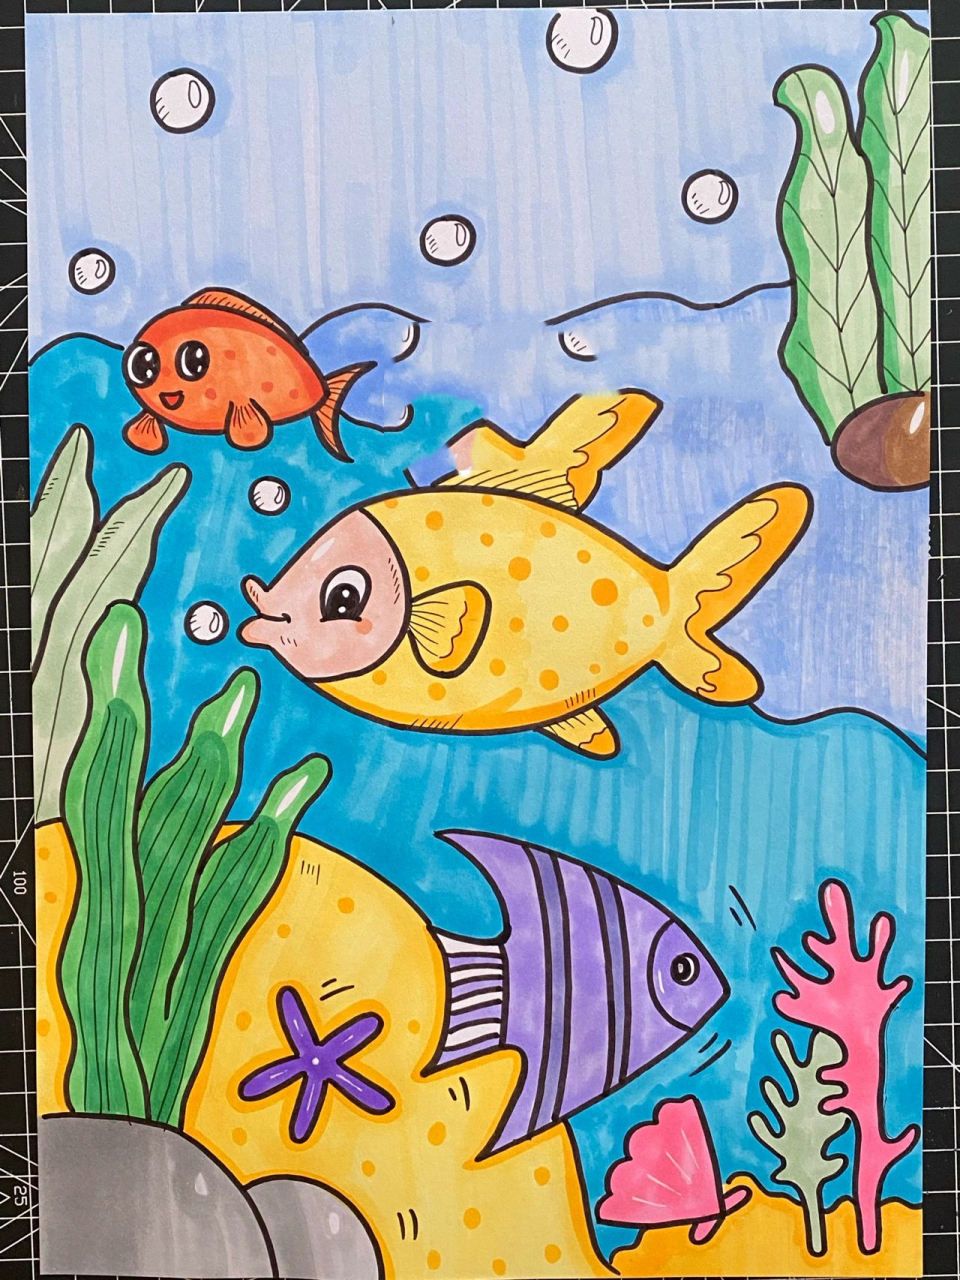 鱼类简笔画 海底世界图片